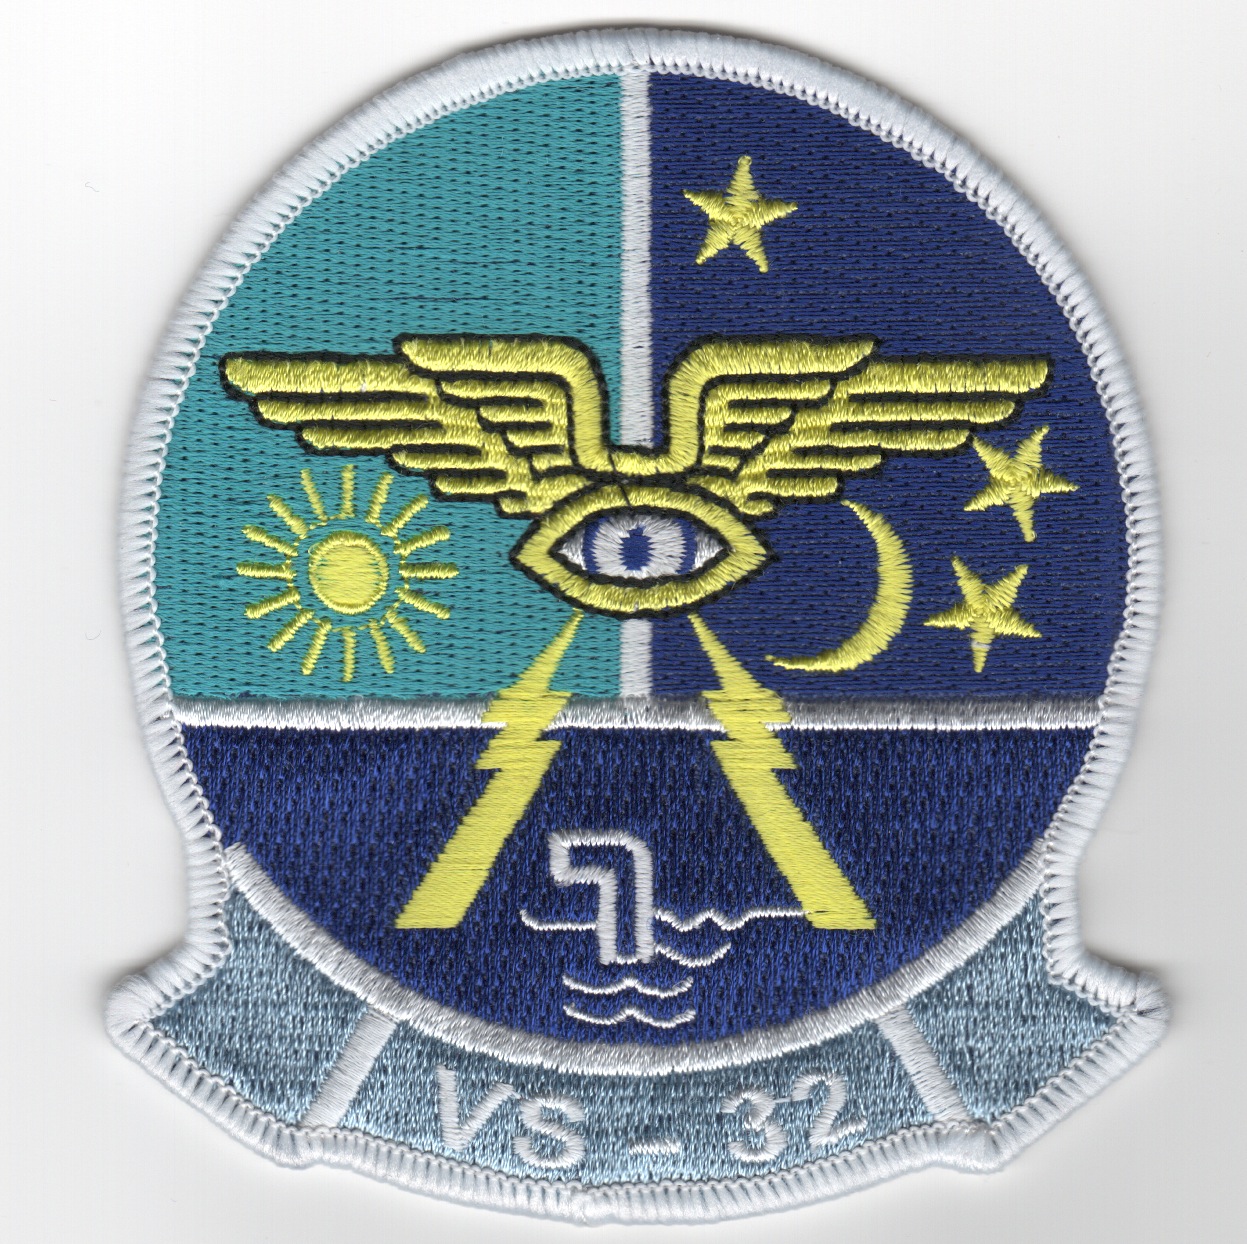 VS-32 Squadron Patch